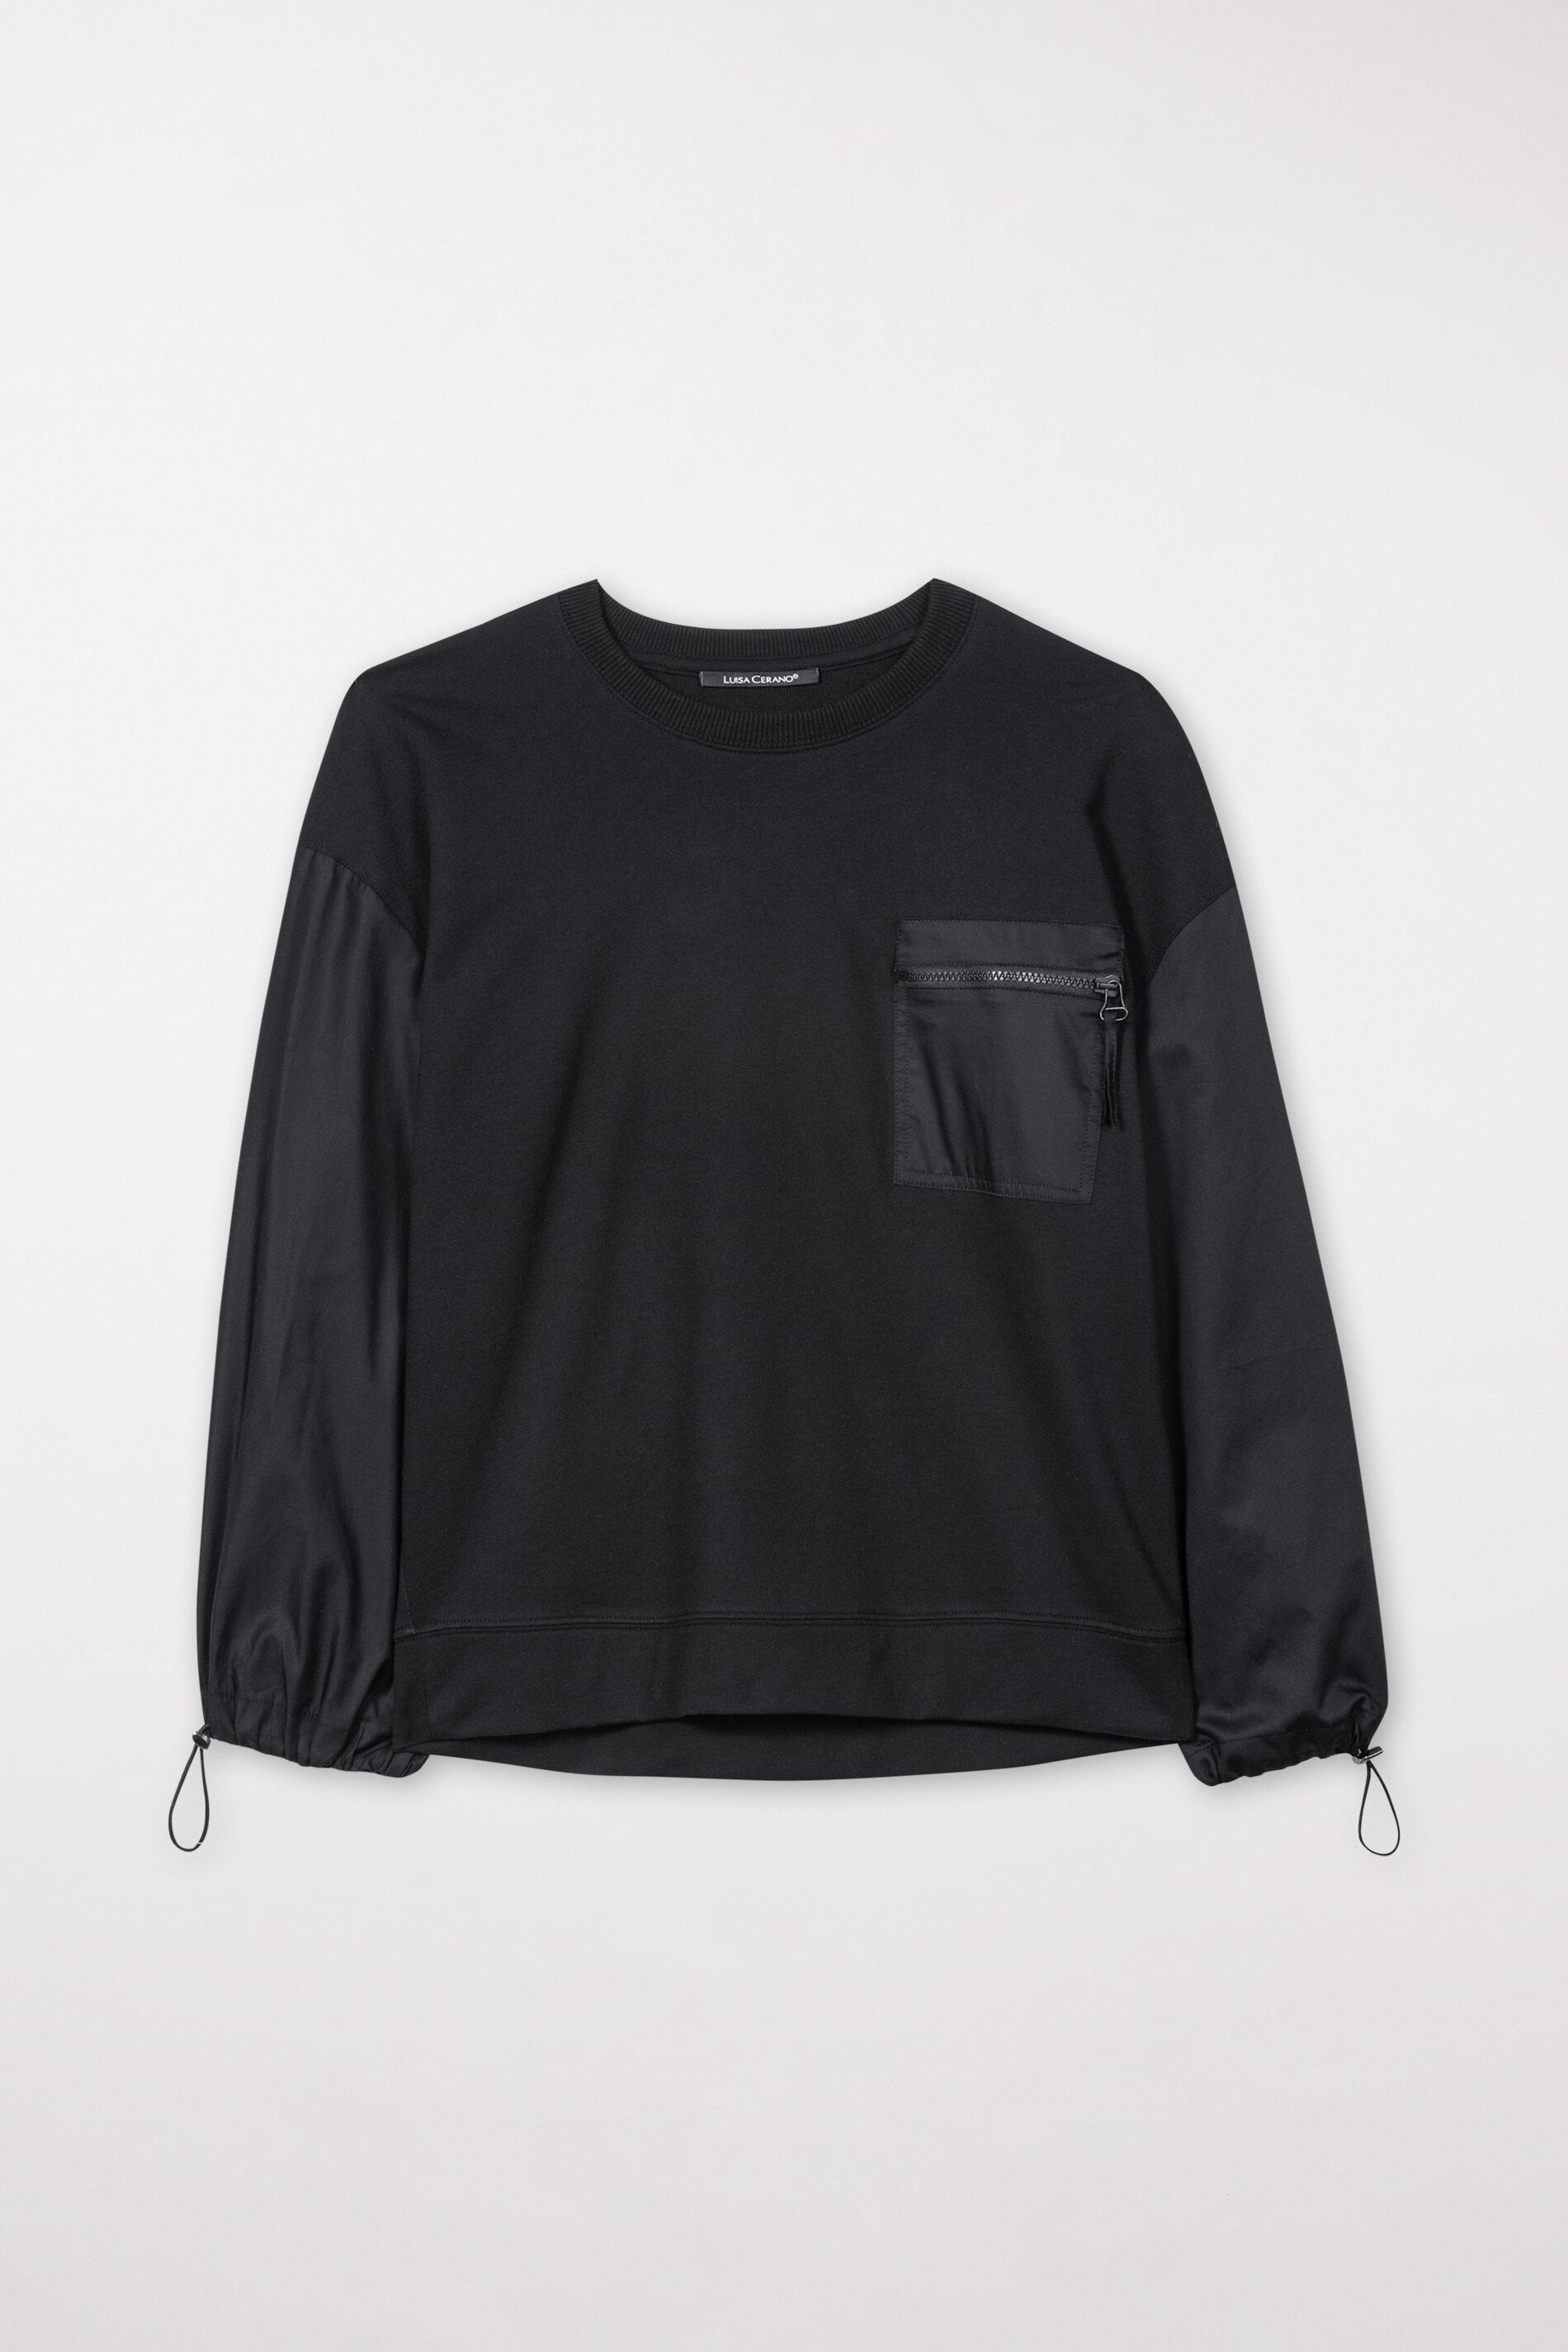 LUISA CERANO-OUTLET-SALE-Sweatshirt mit Brusttasche-Strick-34-black-by-ARCHIVIST